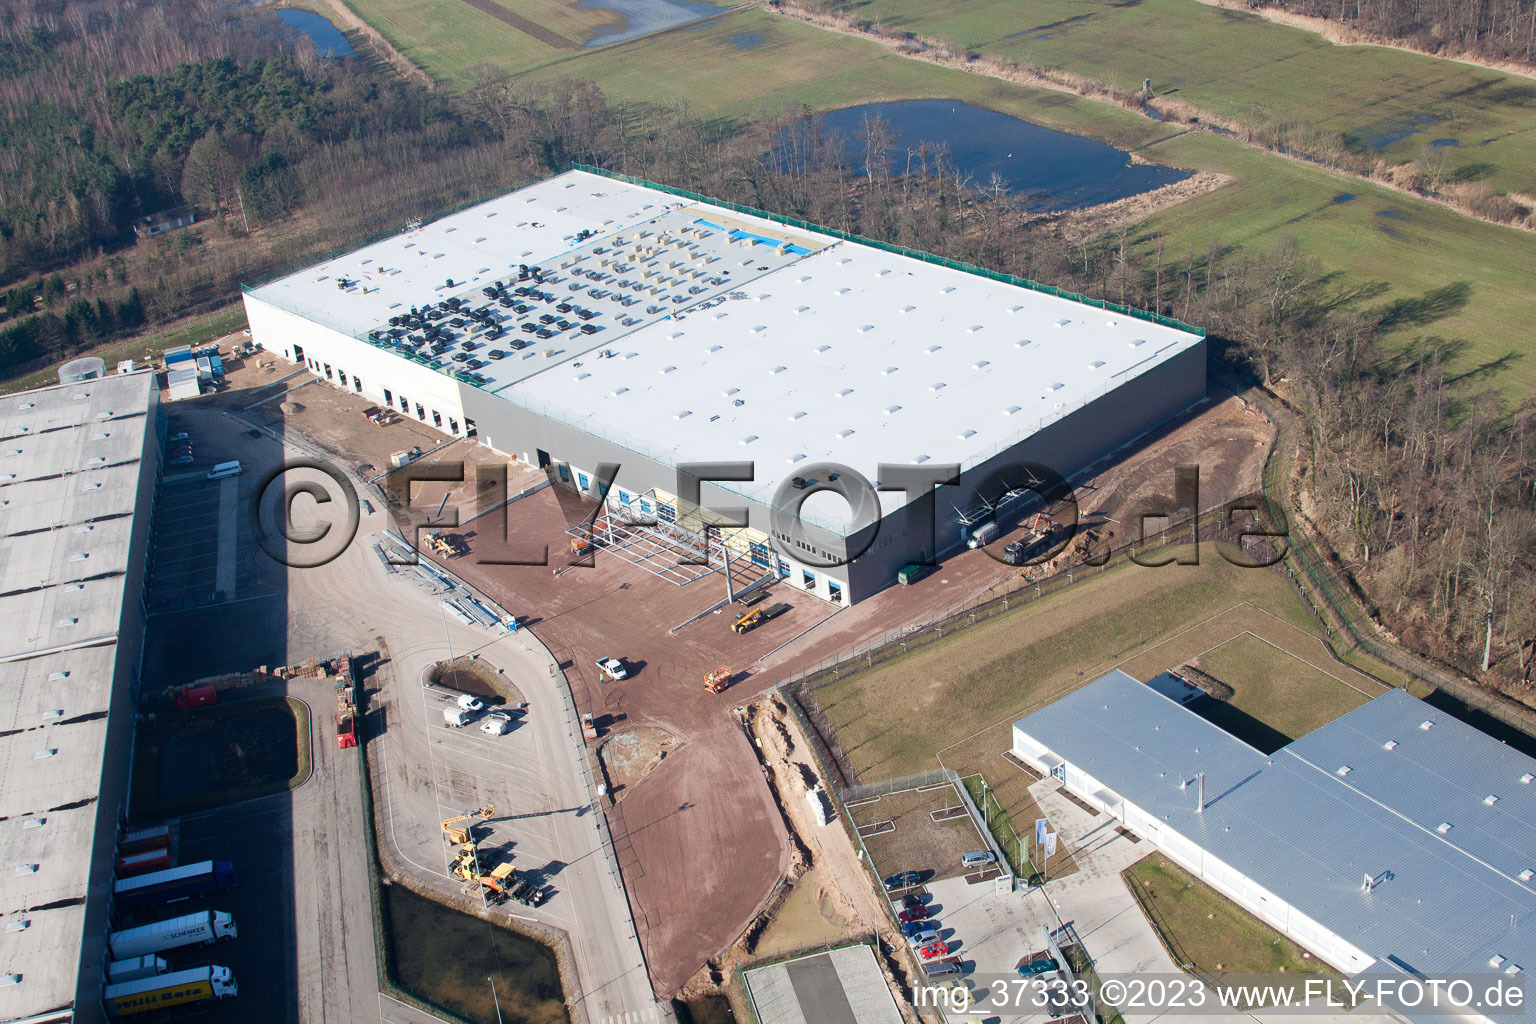 Zone commerciale Horst, 3ème phase de construction Gazely à le quartier Minderslachen in Kandel dans le département Rhénanie-Palatinat, Allemagne hors des airs